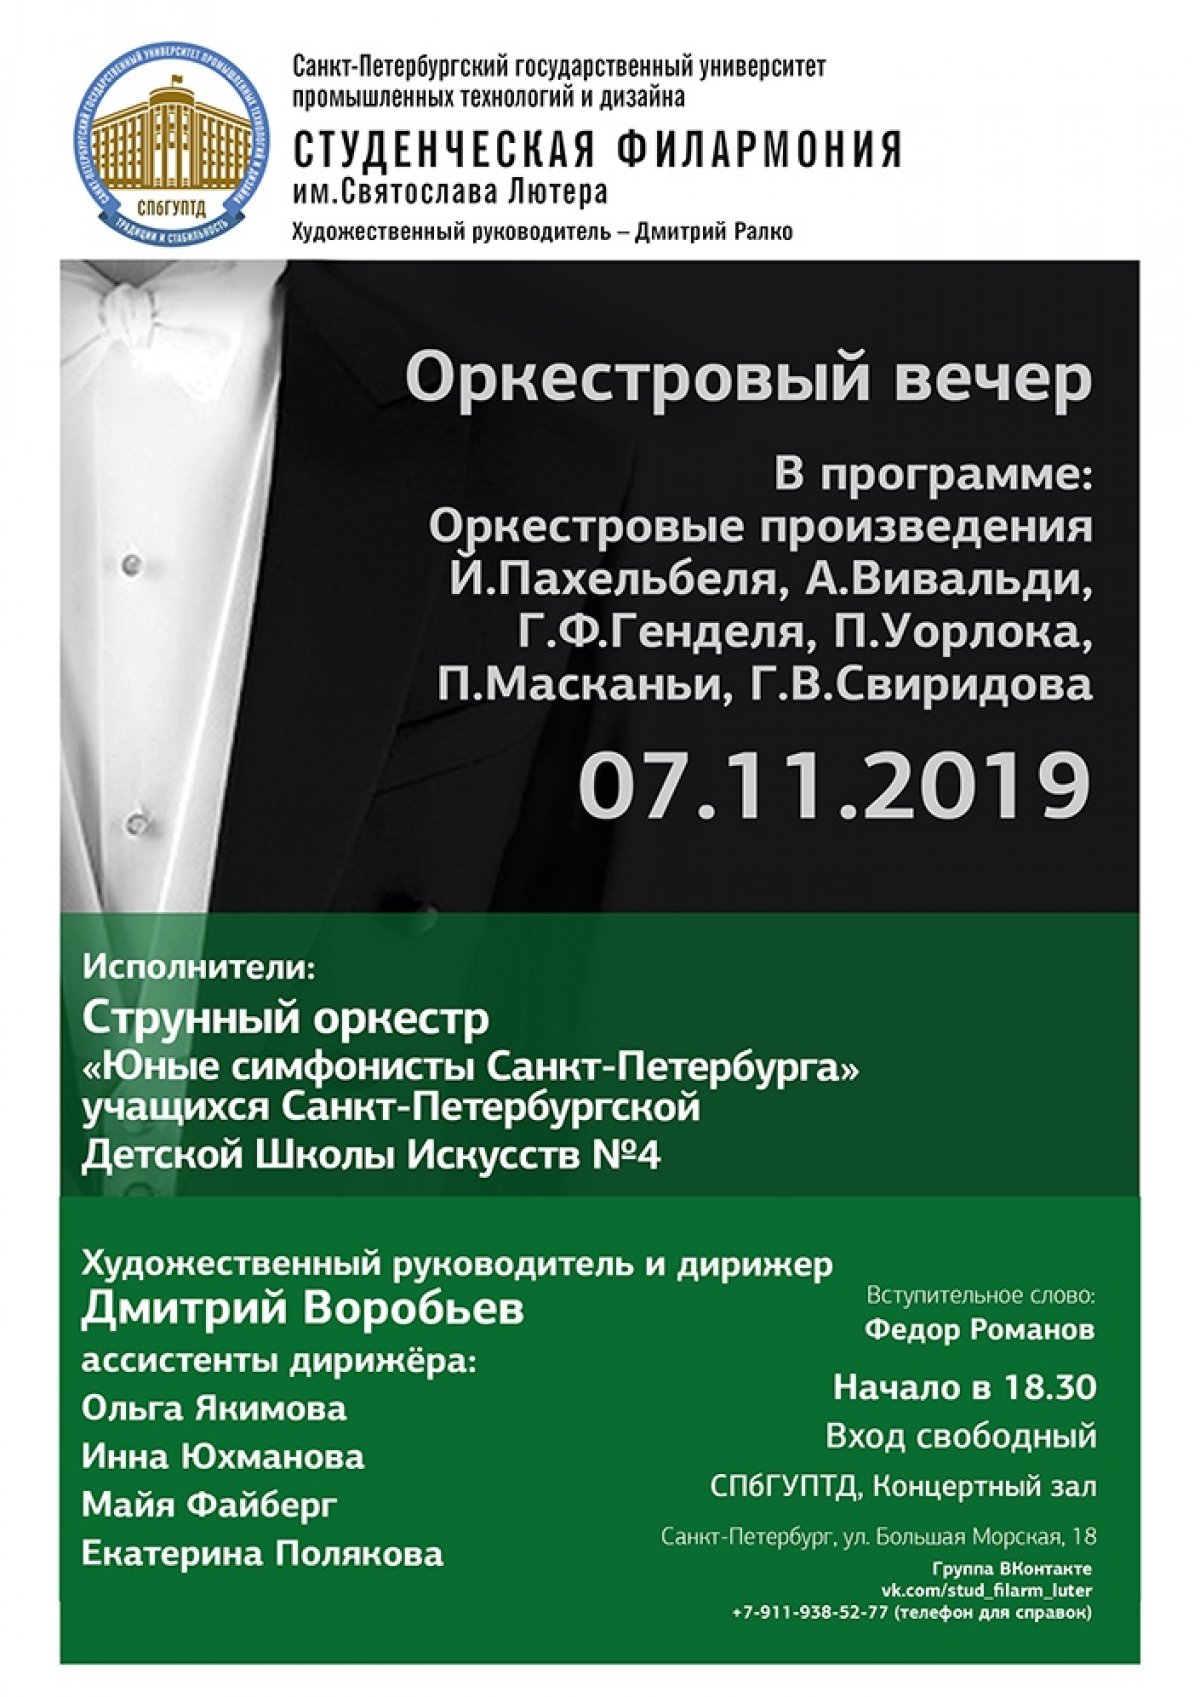 Приглашаем всех 7 ноября в 18:30 насладиться Оркестровым вечером, который будет проходить в концертном зале СПбГУПТД в рамках проекта «Студенческая филармония».